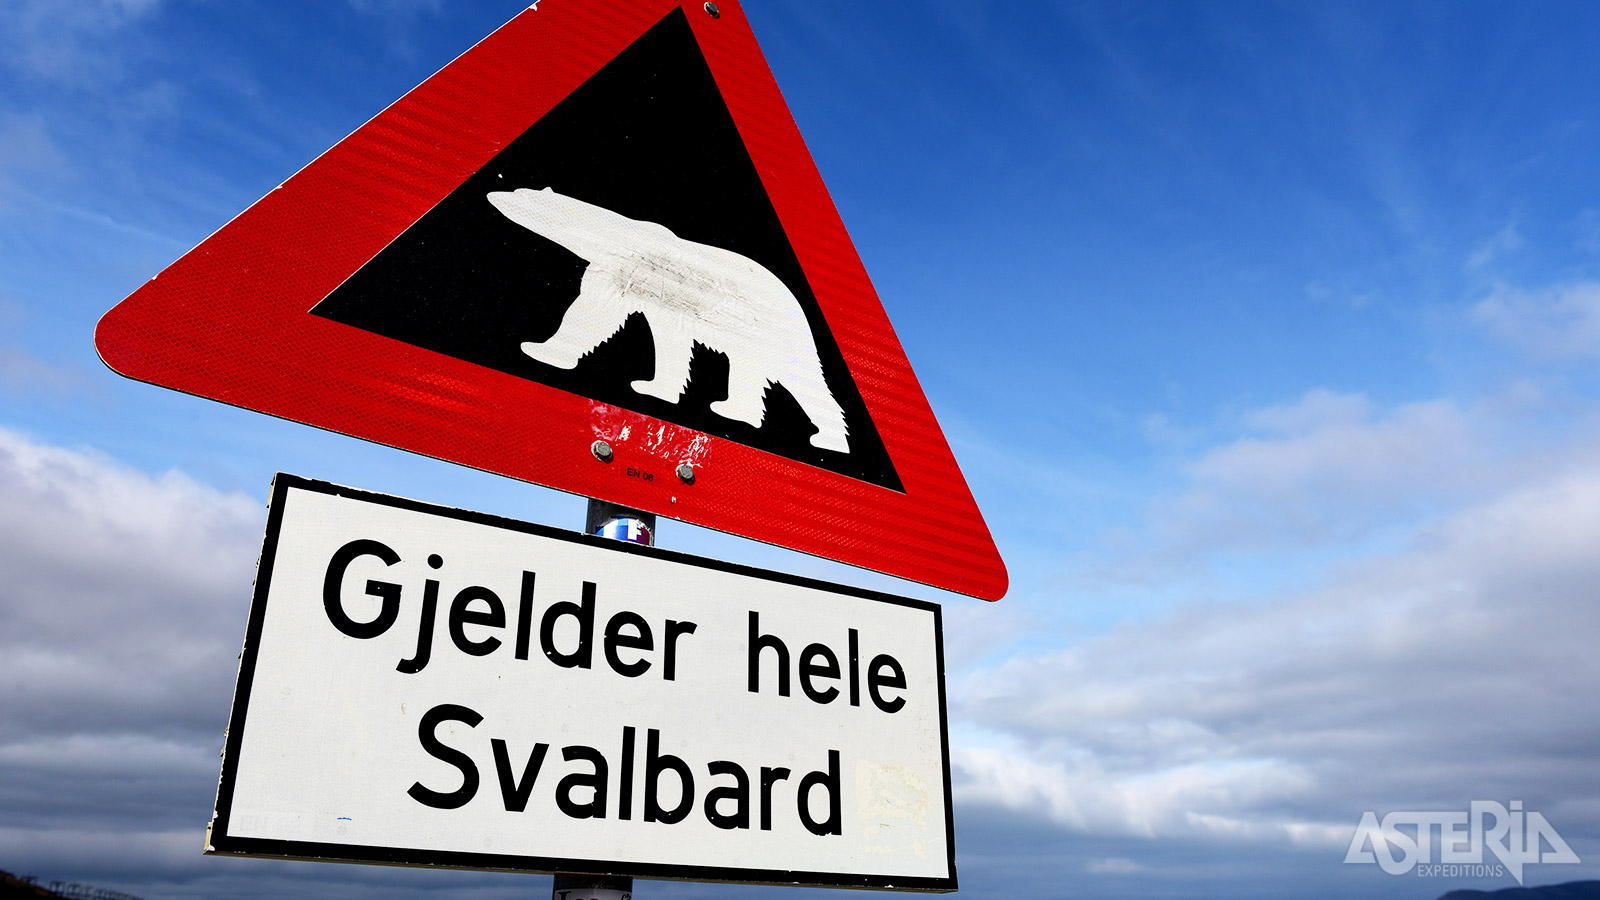 ’Gjelder hele Svalbard’ - Opgelet voor ijsberen op het volledige Spitsbergen